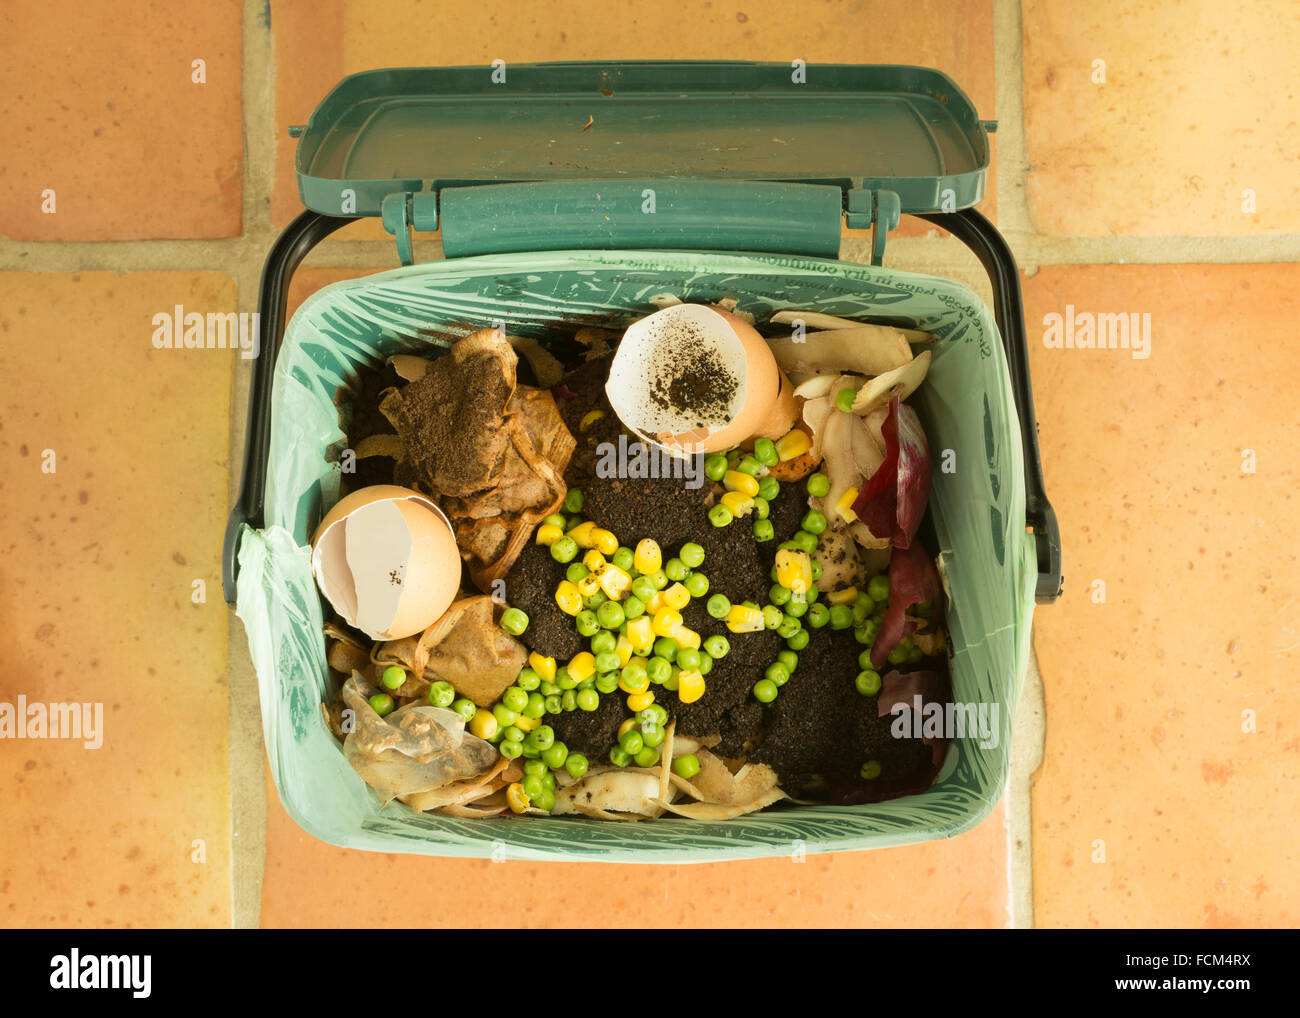 Speisereste - indoor Lebensmittel recycling Caddy voller Küchenabfälle für recycling oder Kompostierung Stockfoto